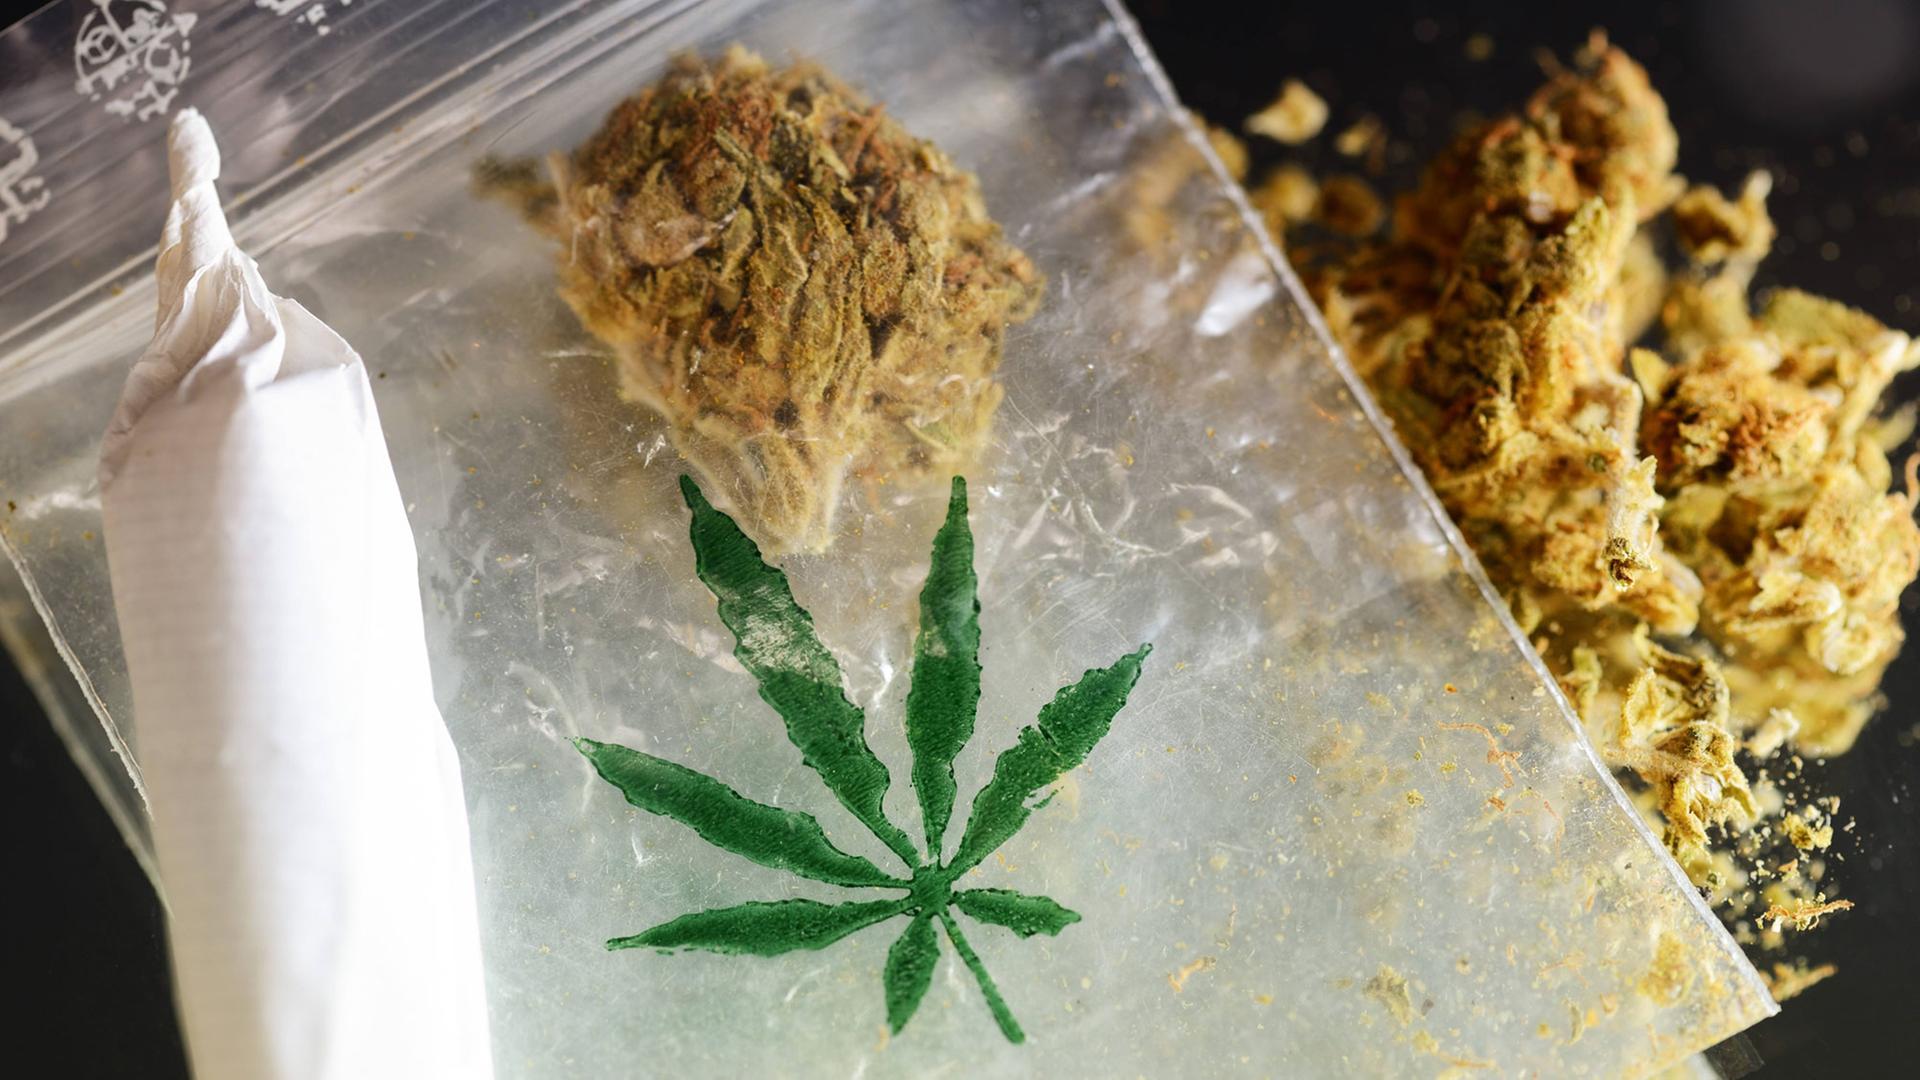 Cannabis-Legalisierung - "Das könnte man sehr ordentlich besteuern" |  deutschlandfunkkultur.de